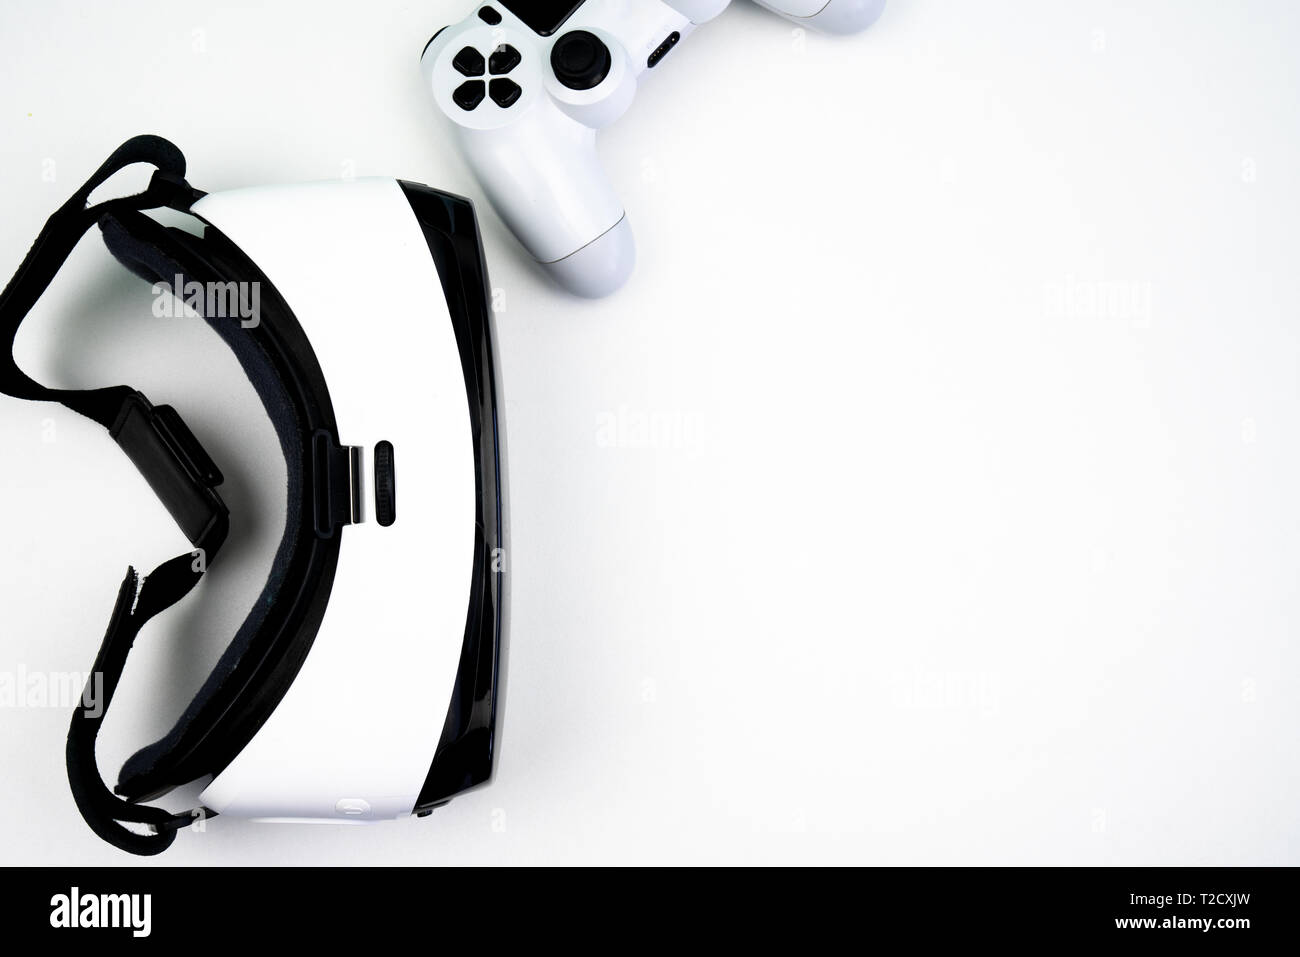 Vue de dessus d'un casque de réalité virtuelle avec un contrôleur de jeu sur un fond blanc. S'amusant à jouer avec elle Banque D'Images